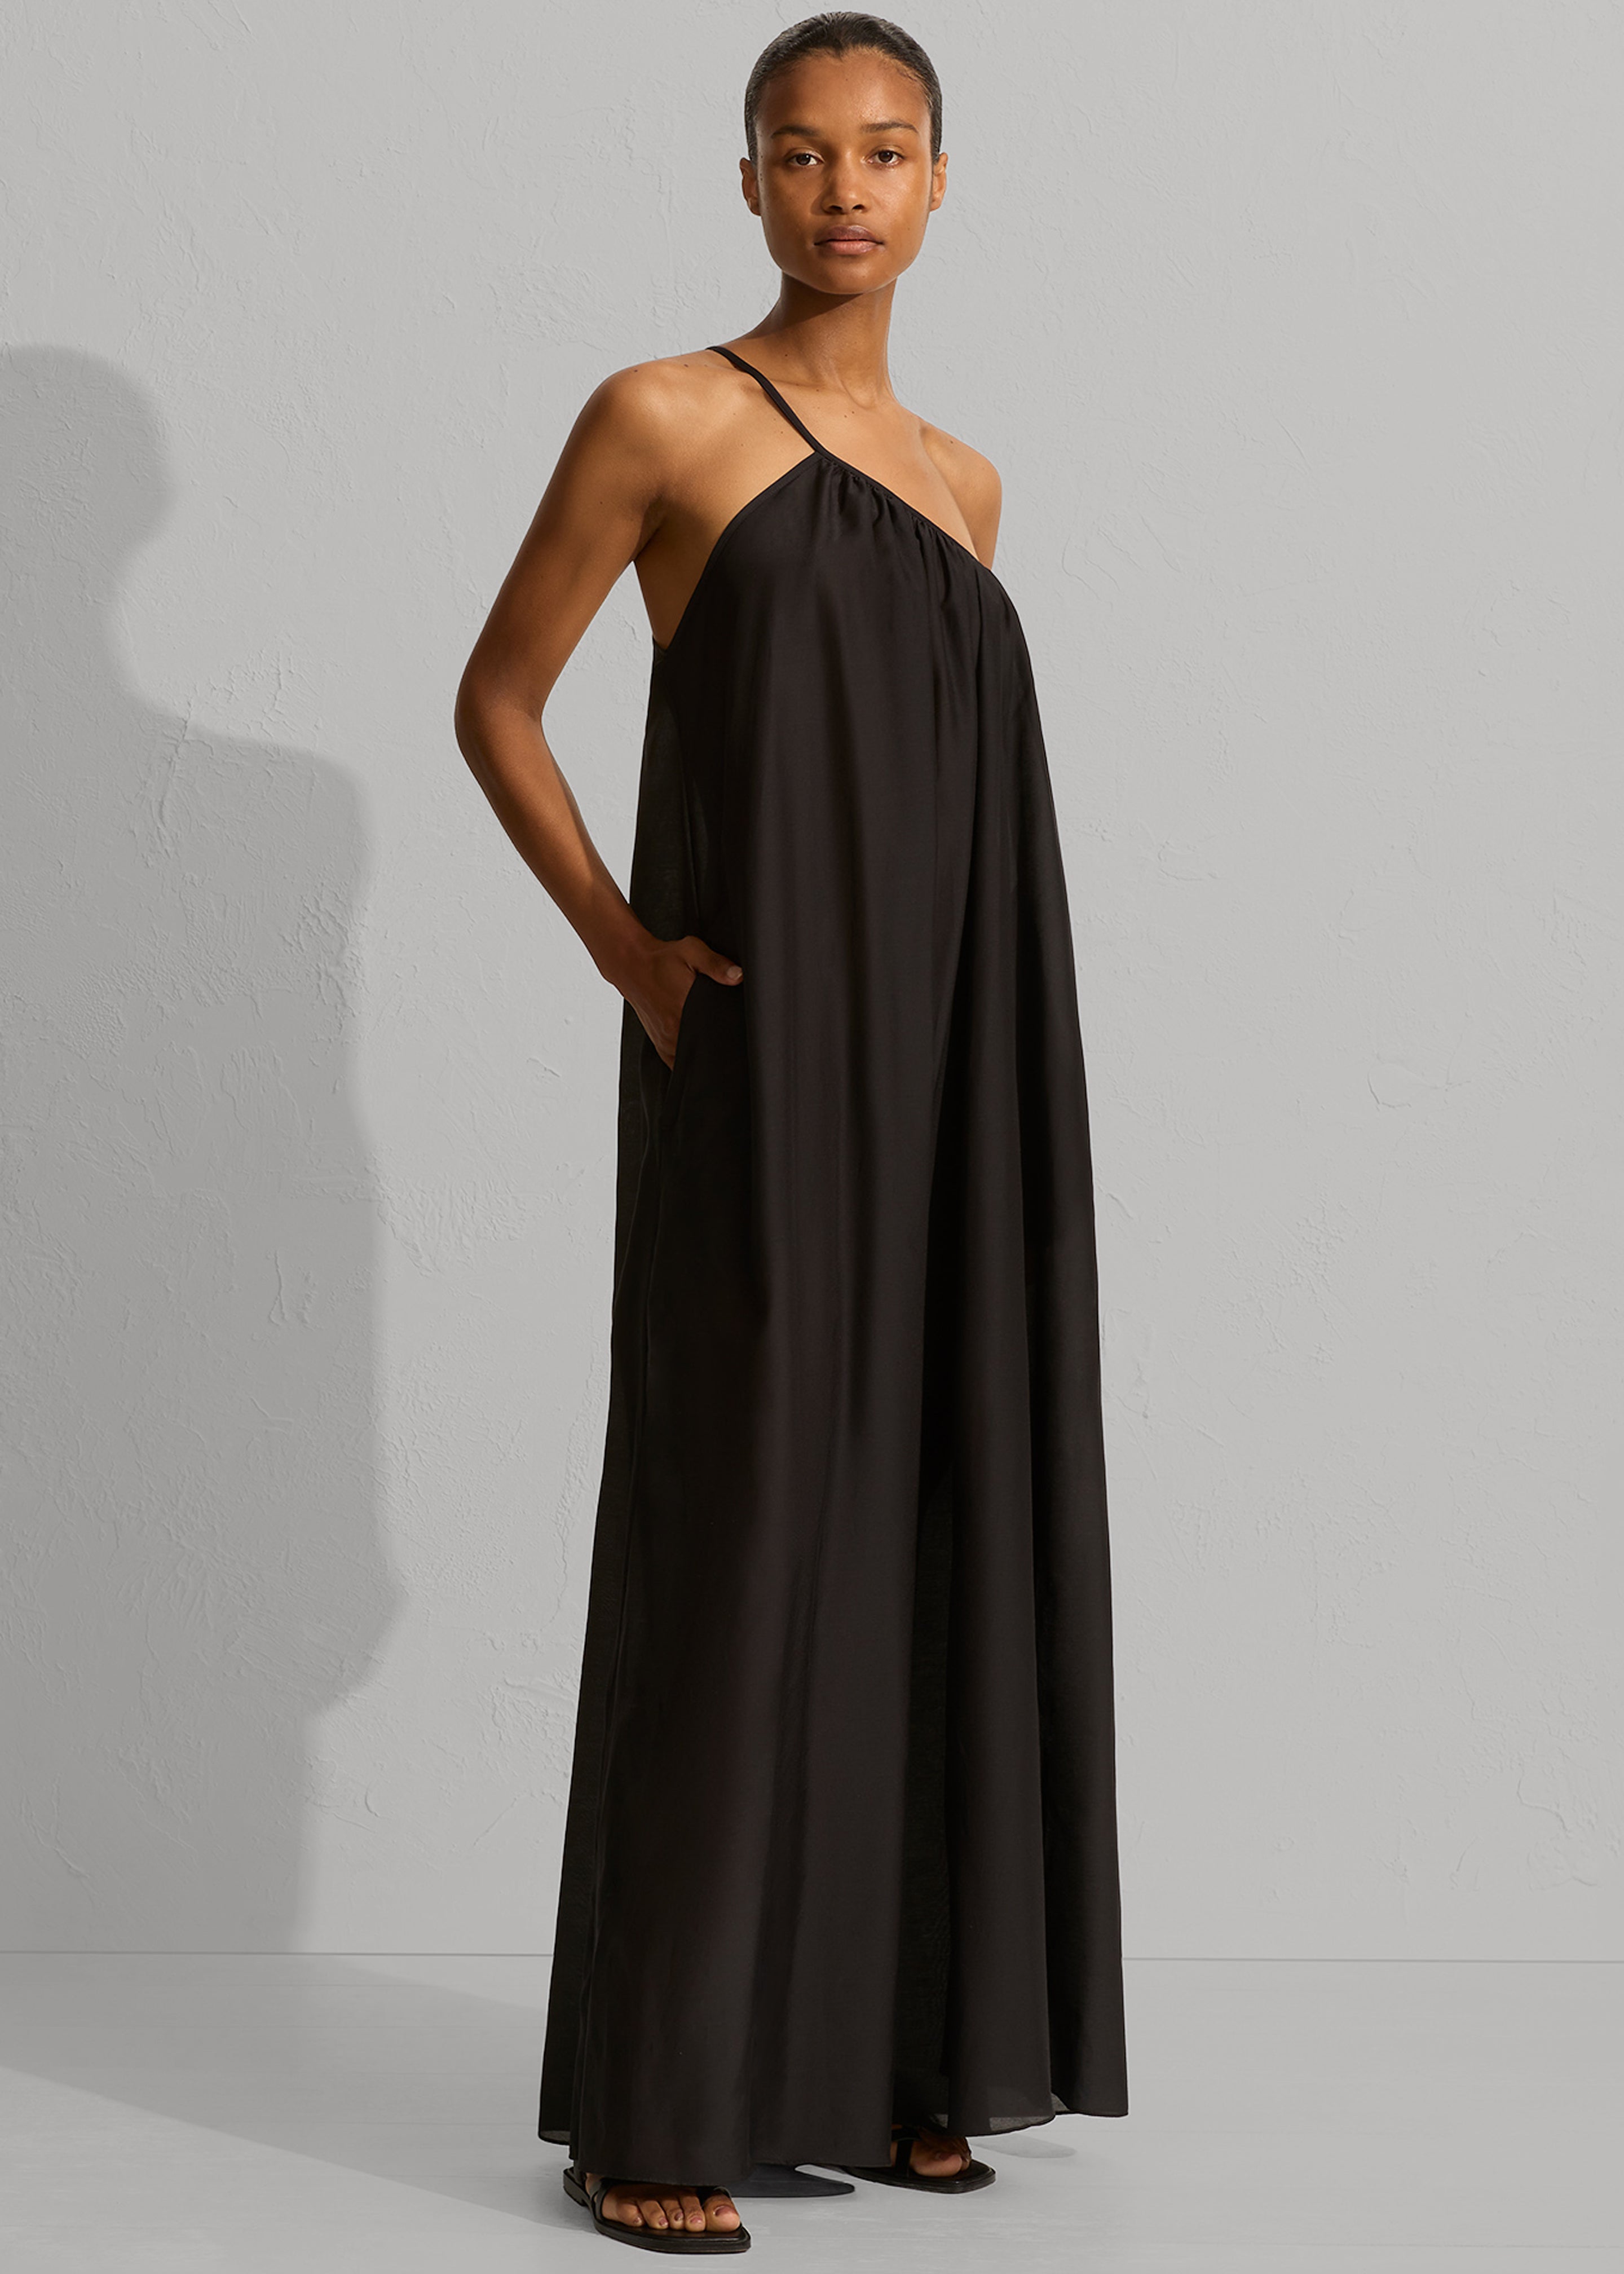 Matteau Voluminous One Shoulder Dress - Black - 1